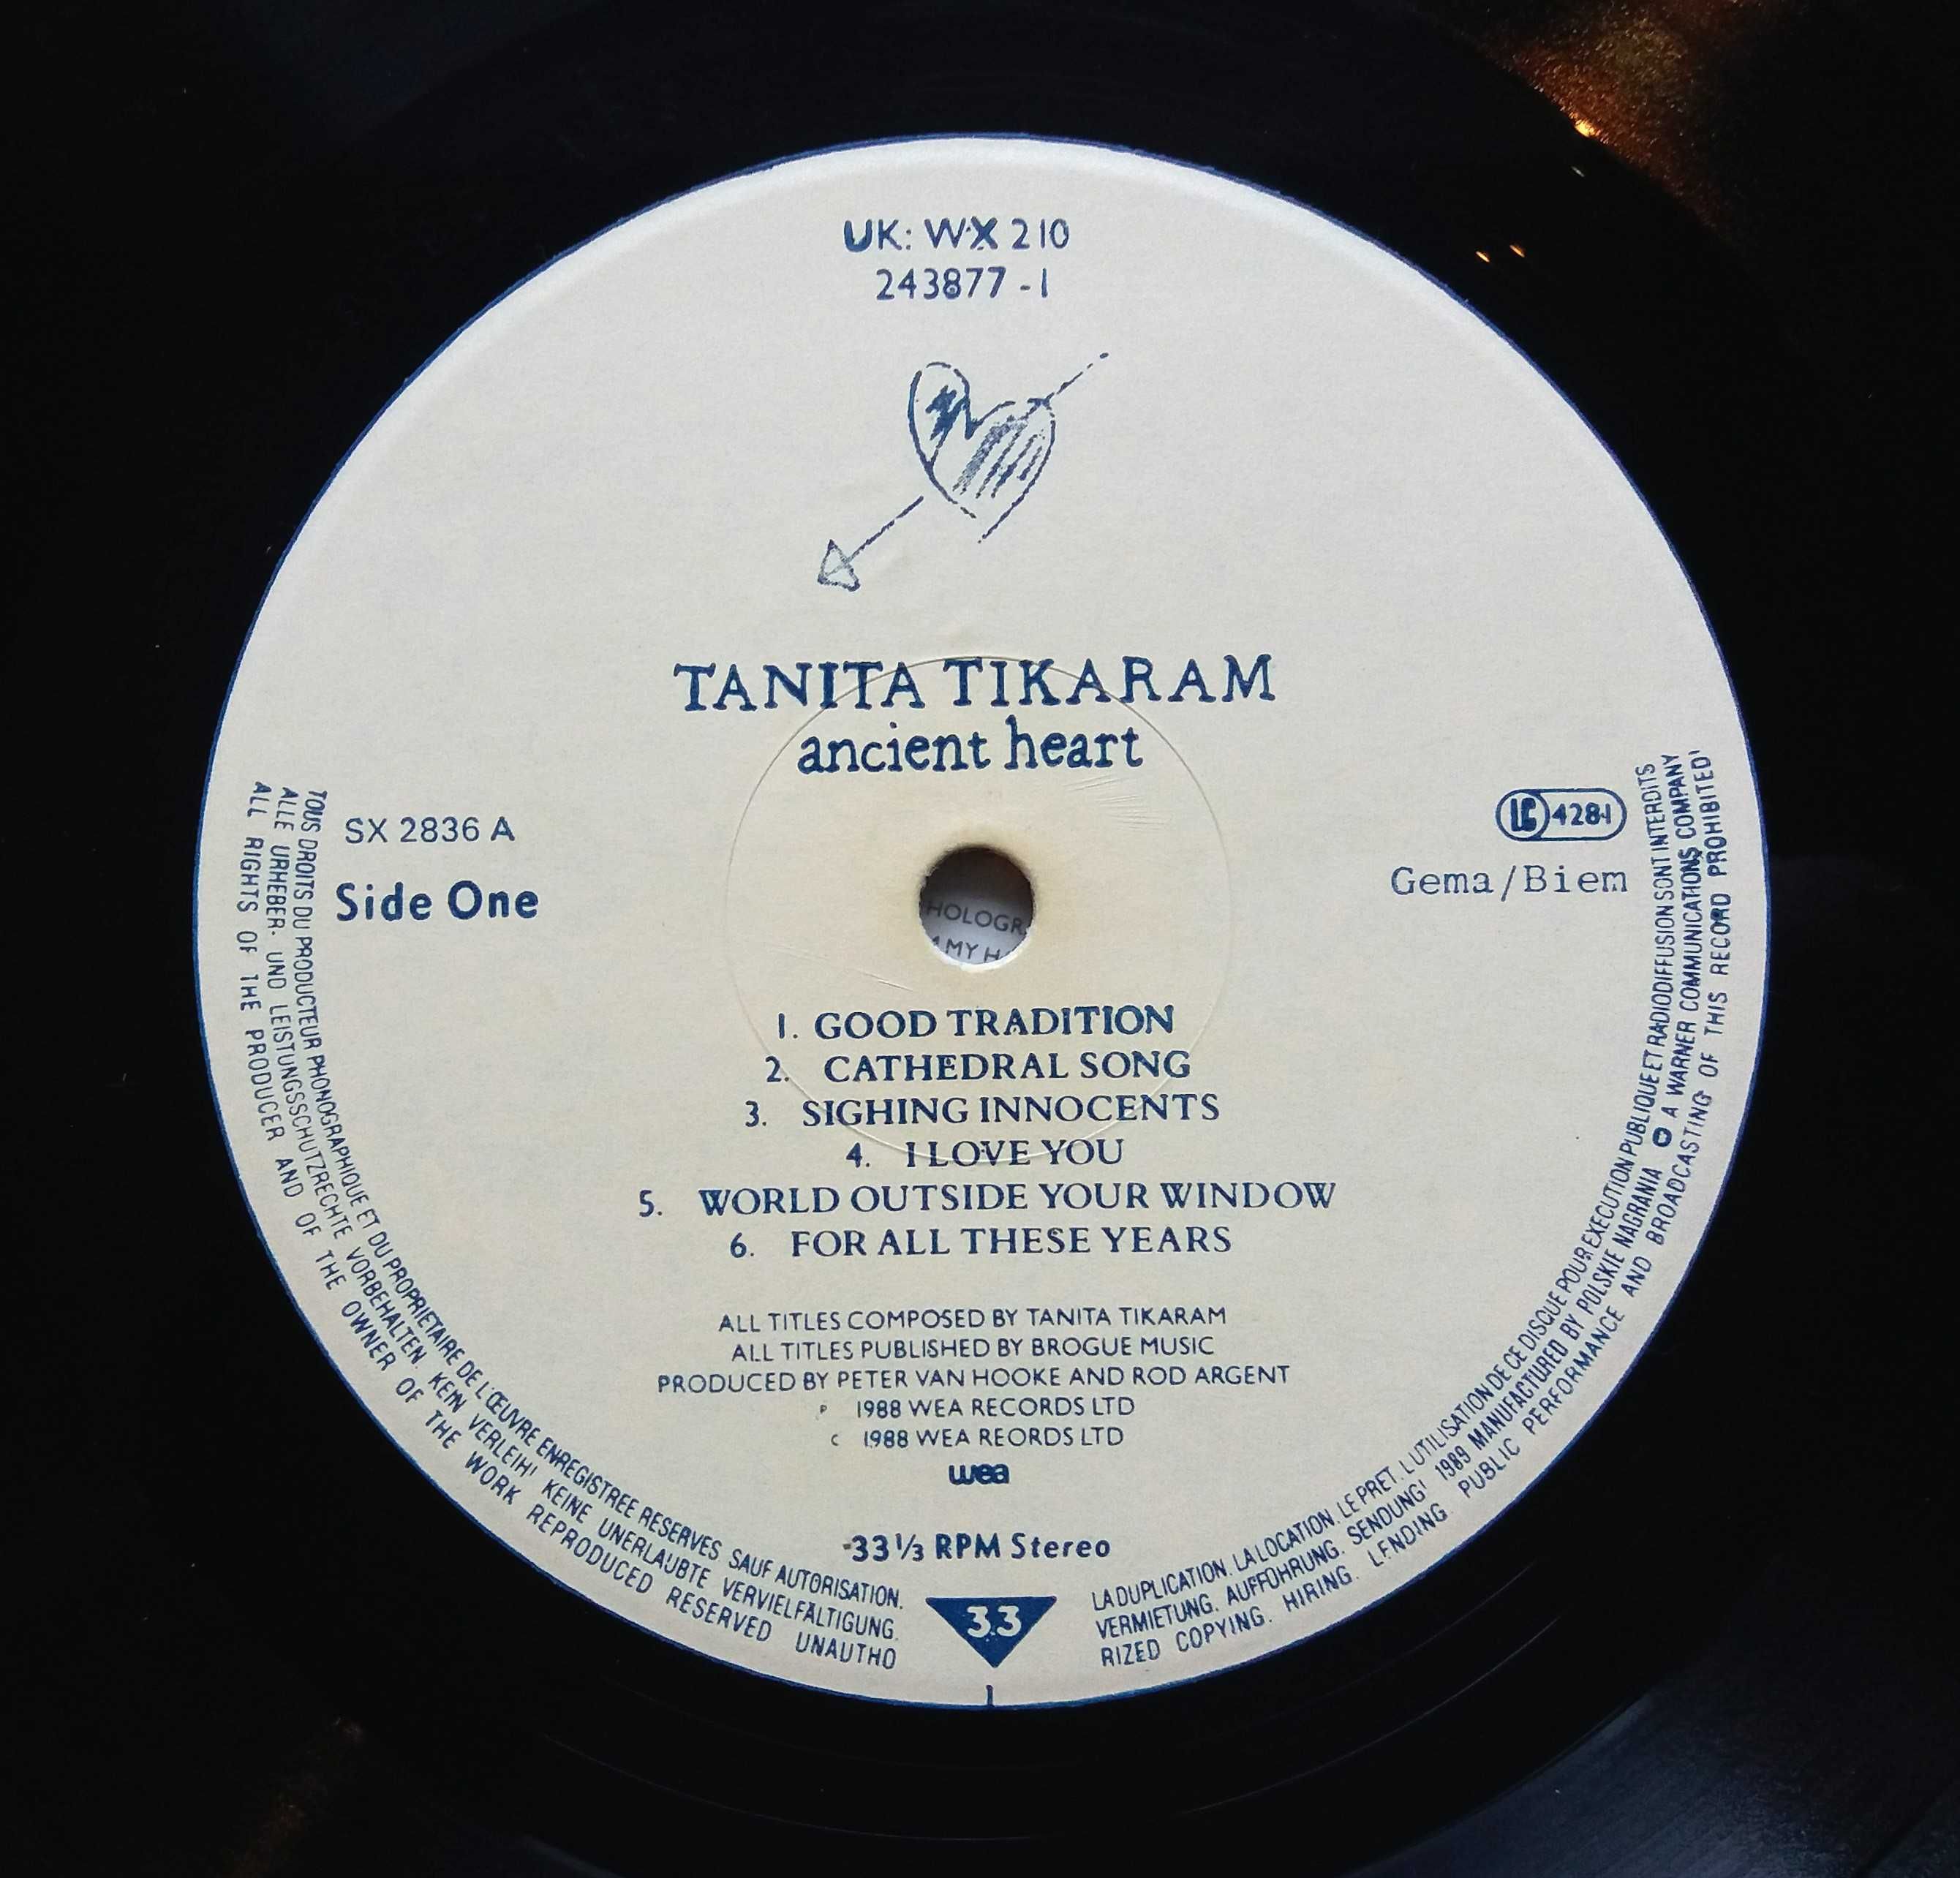 Tanita Tikaram - Ancient Heart 1988 на виниле